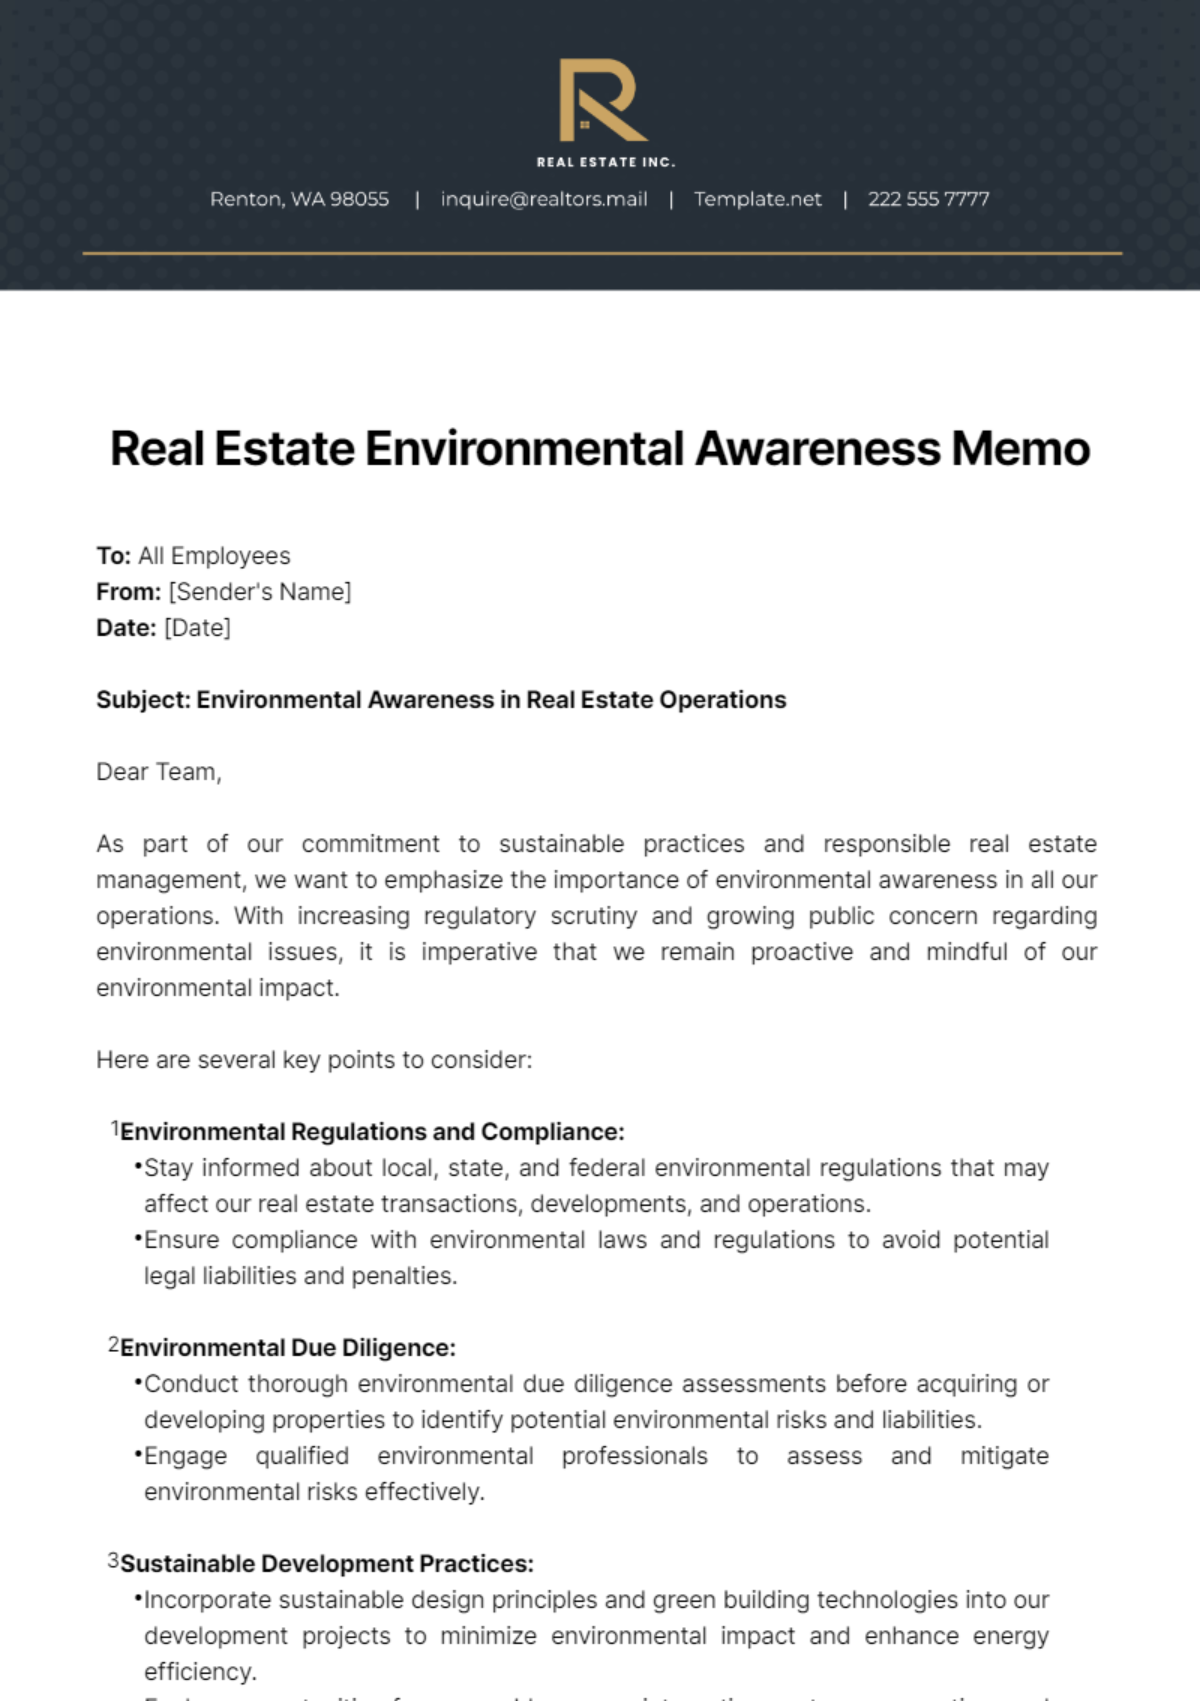 Real Estate Environmental Awareness Memo Template